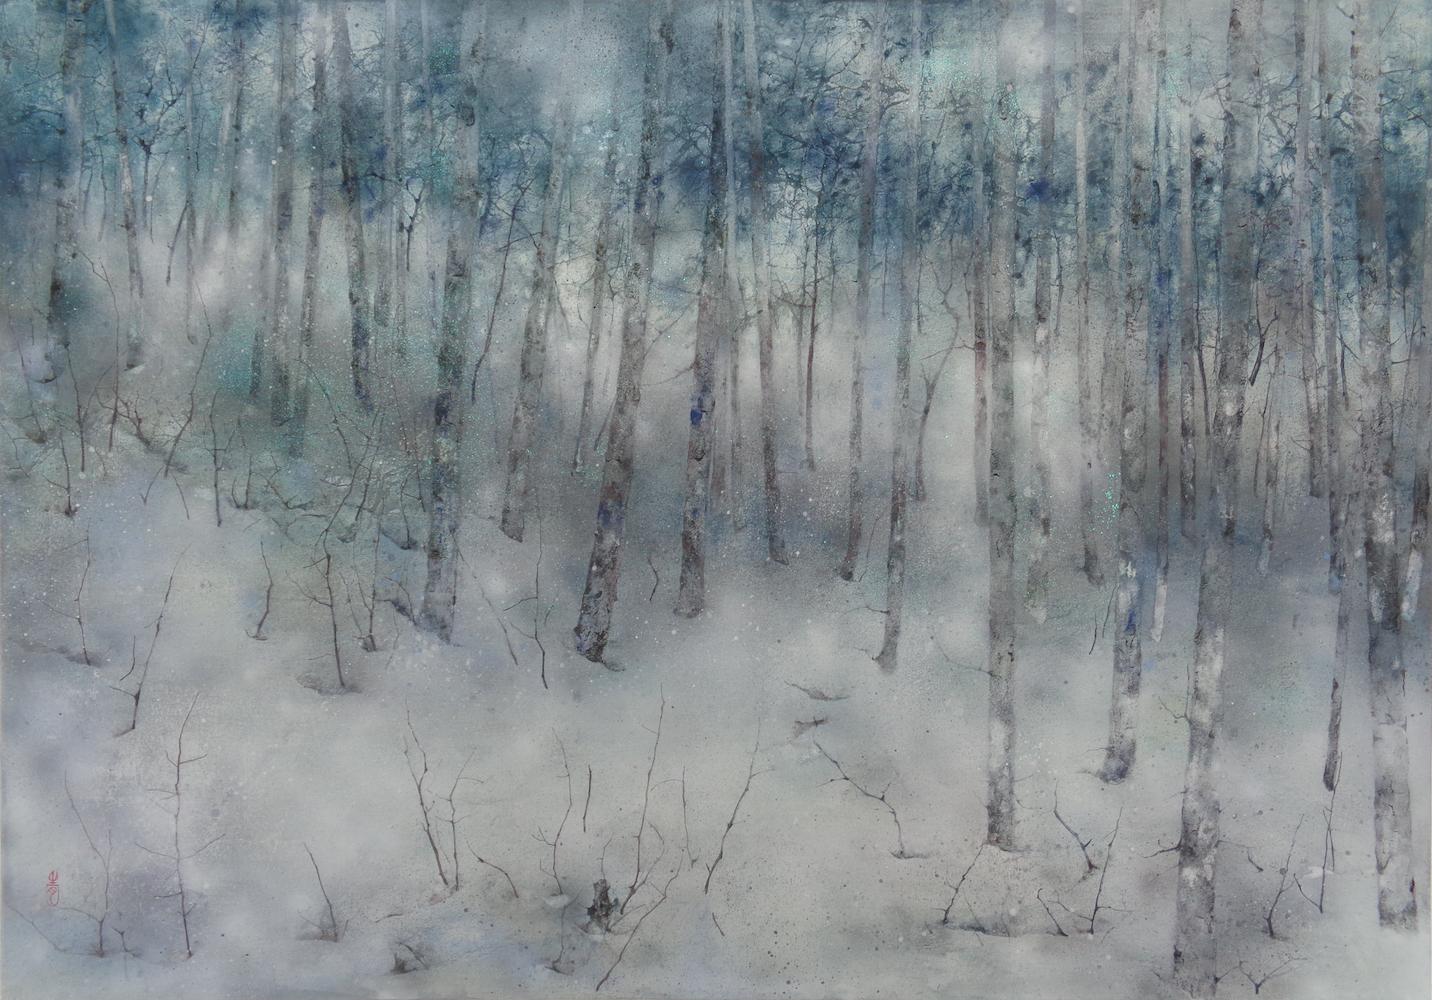 Einsamkeit von Chen Yiching - Zeitgenössische Nihonga-Malerei, Wald, grüne Bäume